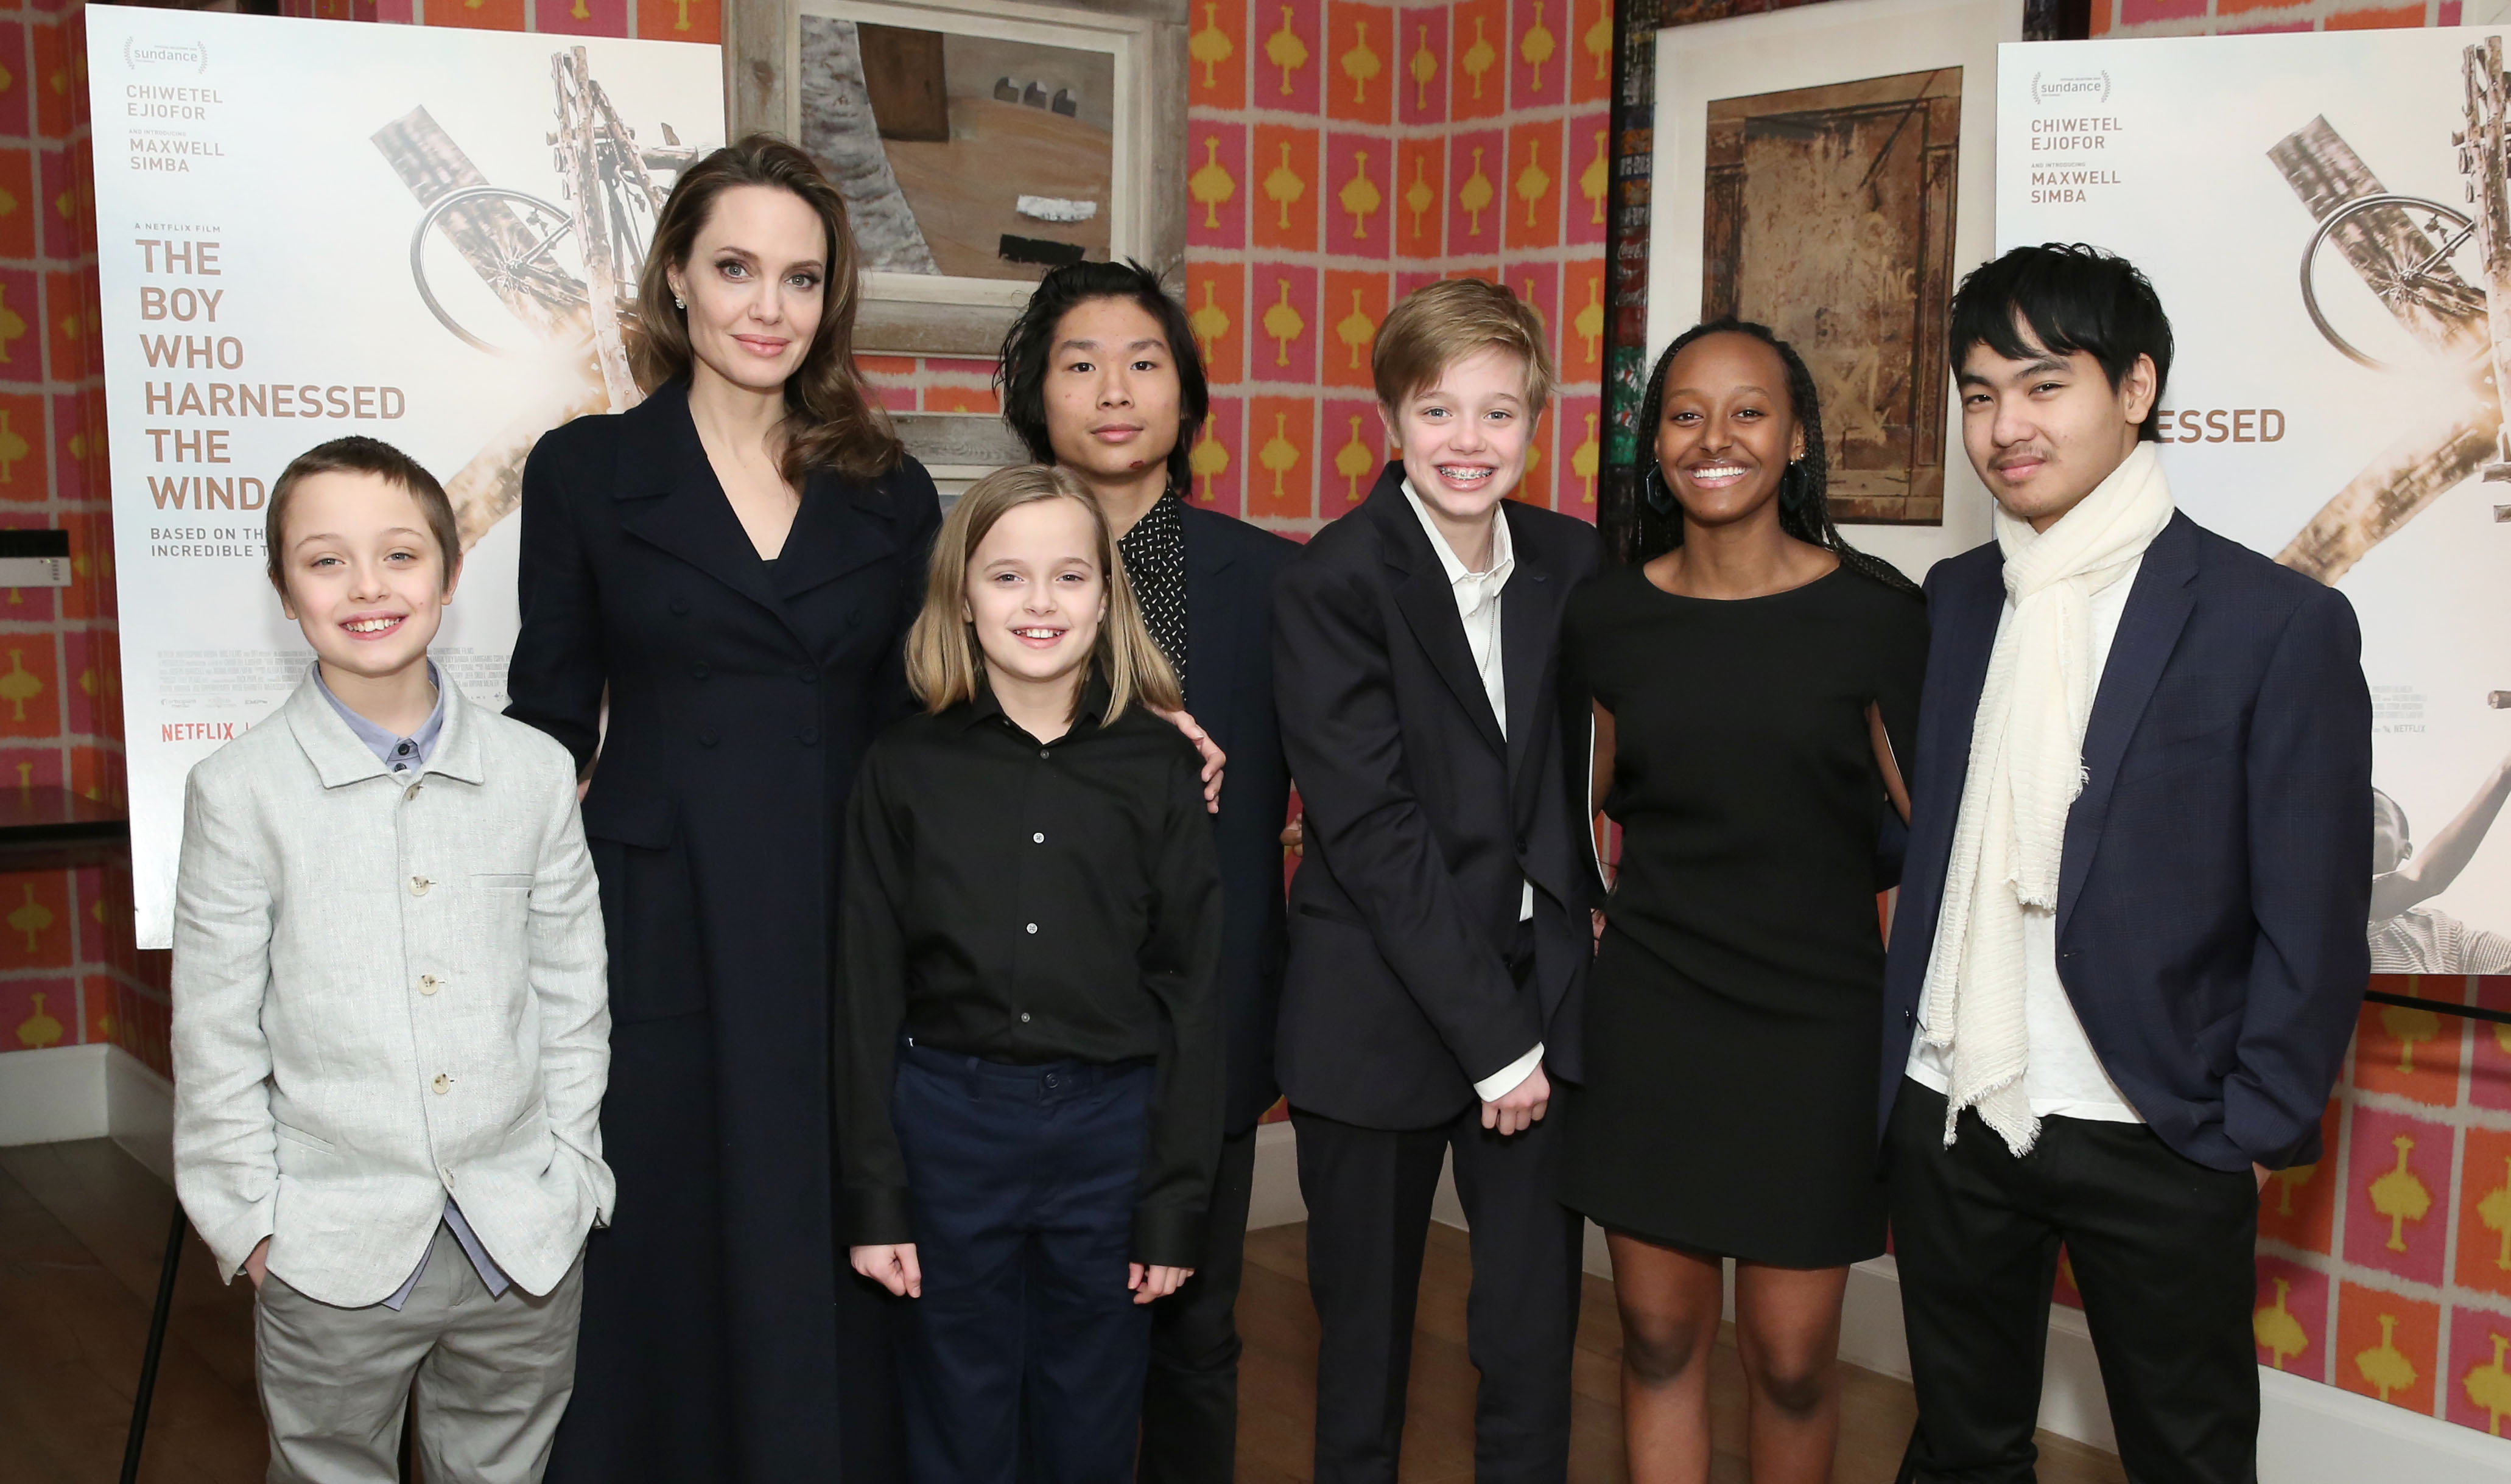 Angelina Jolie con sus hijos Knox, Vivienne, Pax, Shiloh, Zahara y Maddox en la proyección de "The Boy Who Harnessed The Wind" en Nueva York en 2019 | Fuente: Getty Images